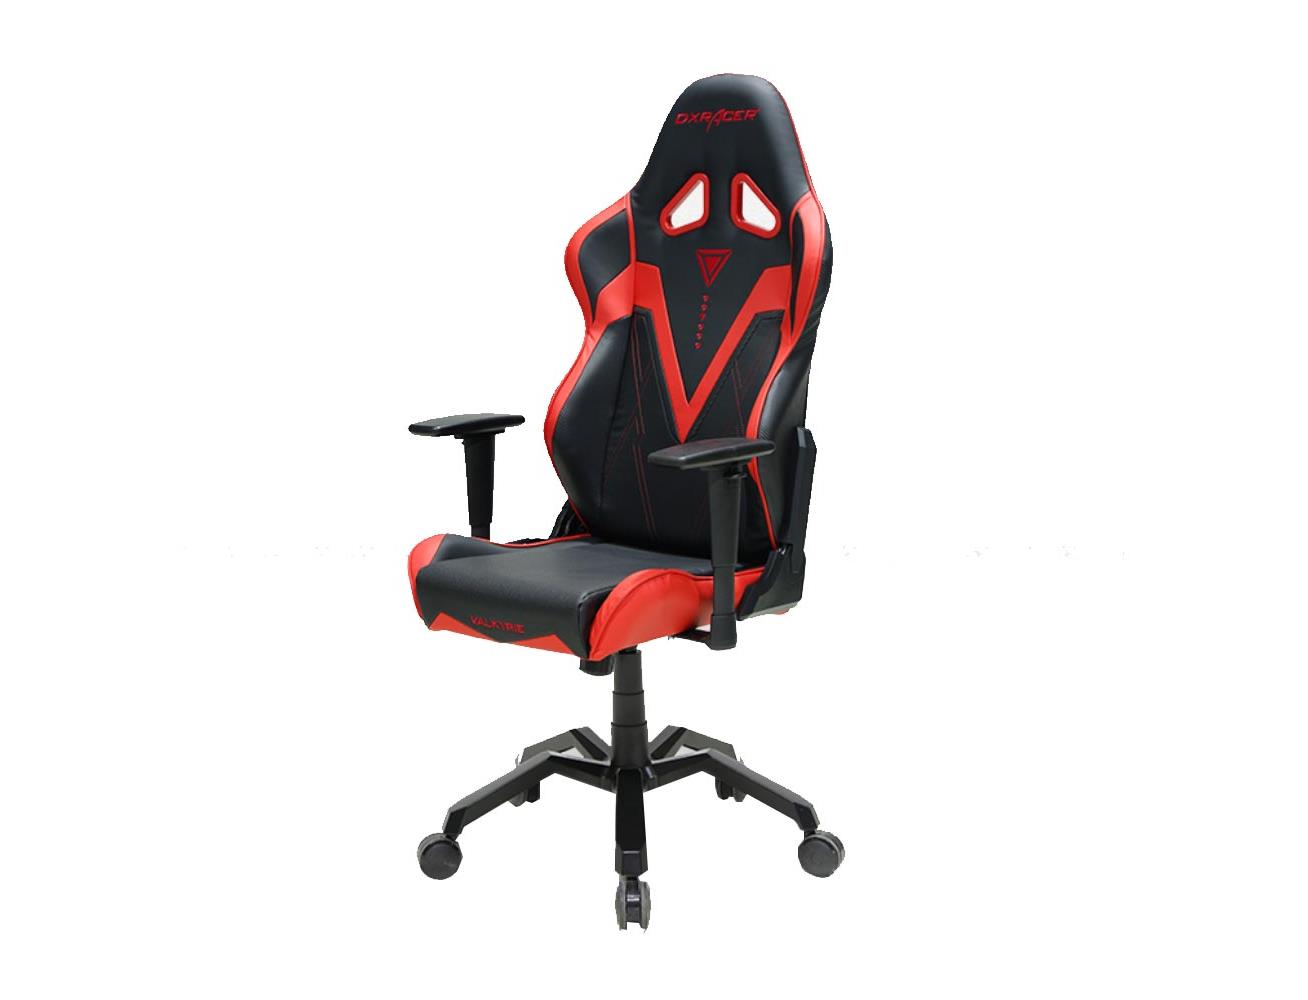  DXRacer Valkyrie  Series Gaming Chair Black Red Blink Kuwait